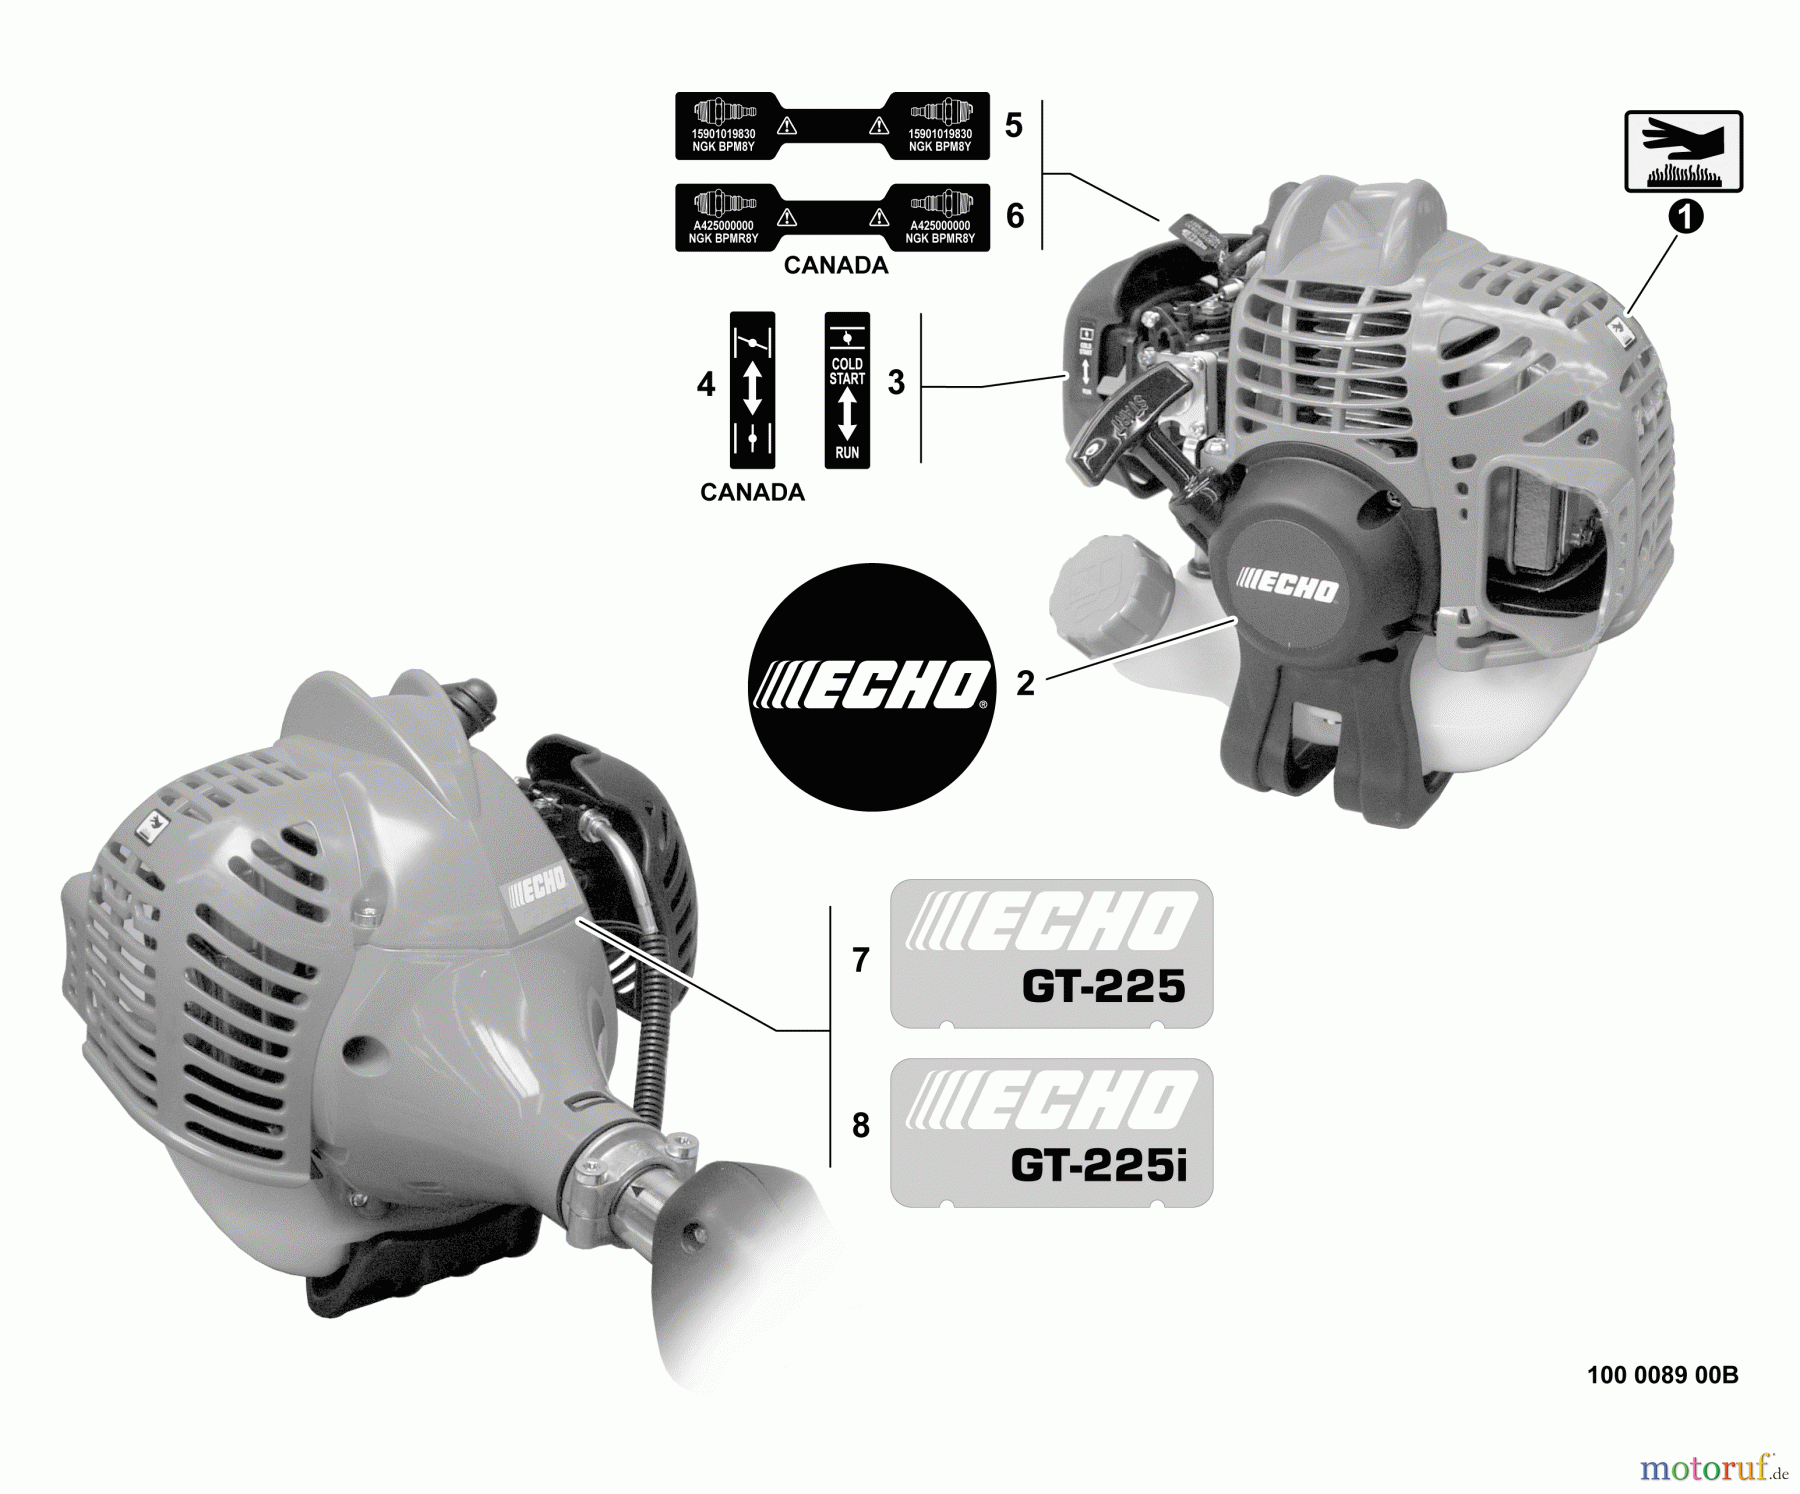  Echo Trimmer, Faden / Bürste GT-225i - Echo String Trimmer, S/N:S08612001001 - S08612999999 Labels